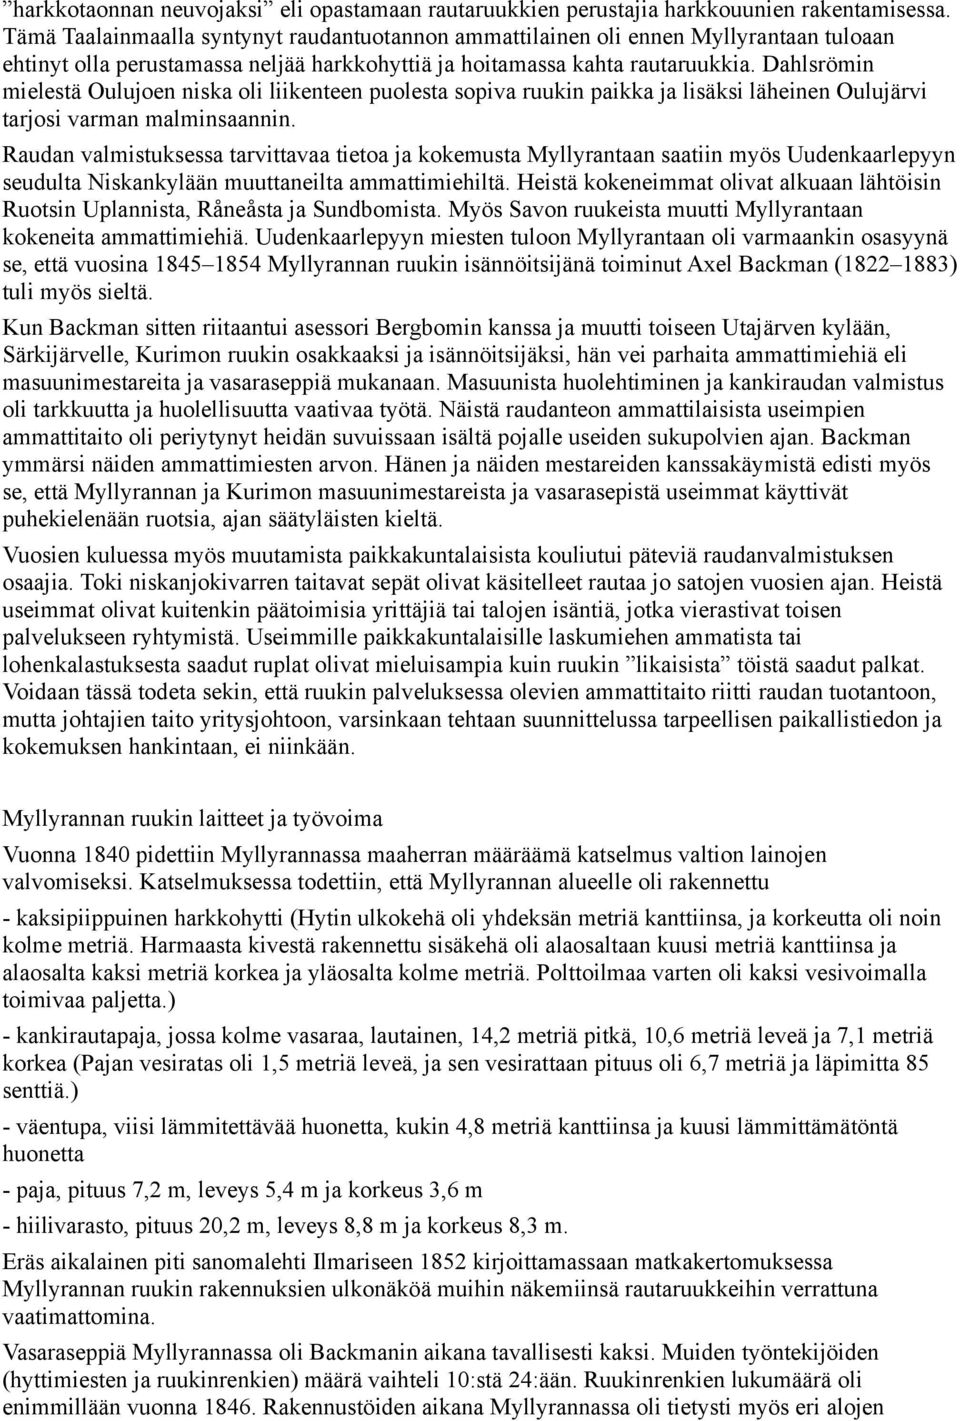 Dahlsrömin mielestä Oulujoen niska oli liikenteen puolesta sopiva ruukin paikka ja lisäksi läheinen Oulujärvi tarjosi varman malminsaannin.